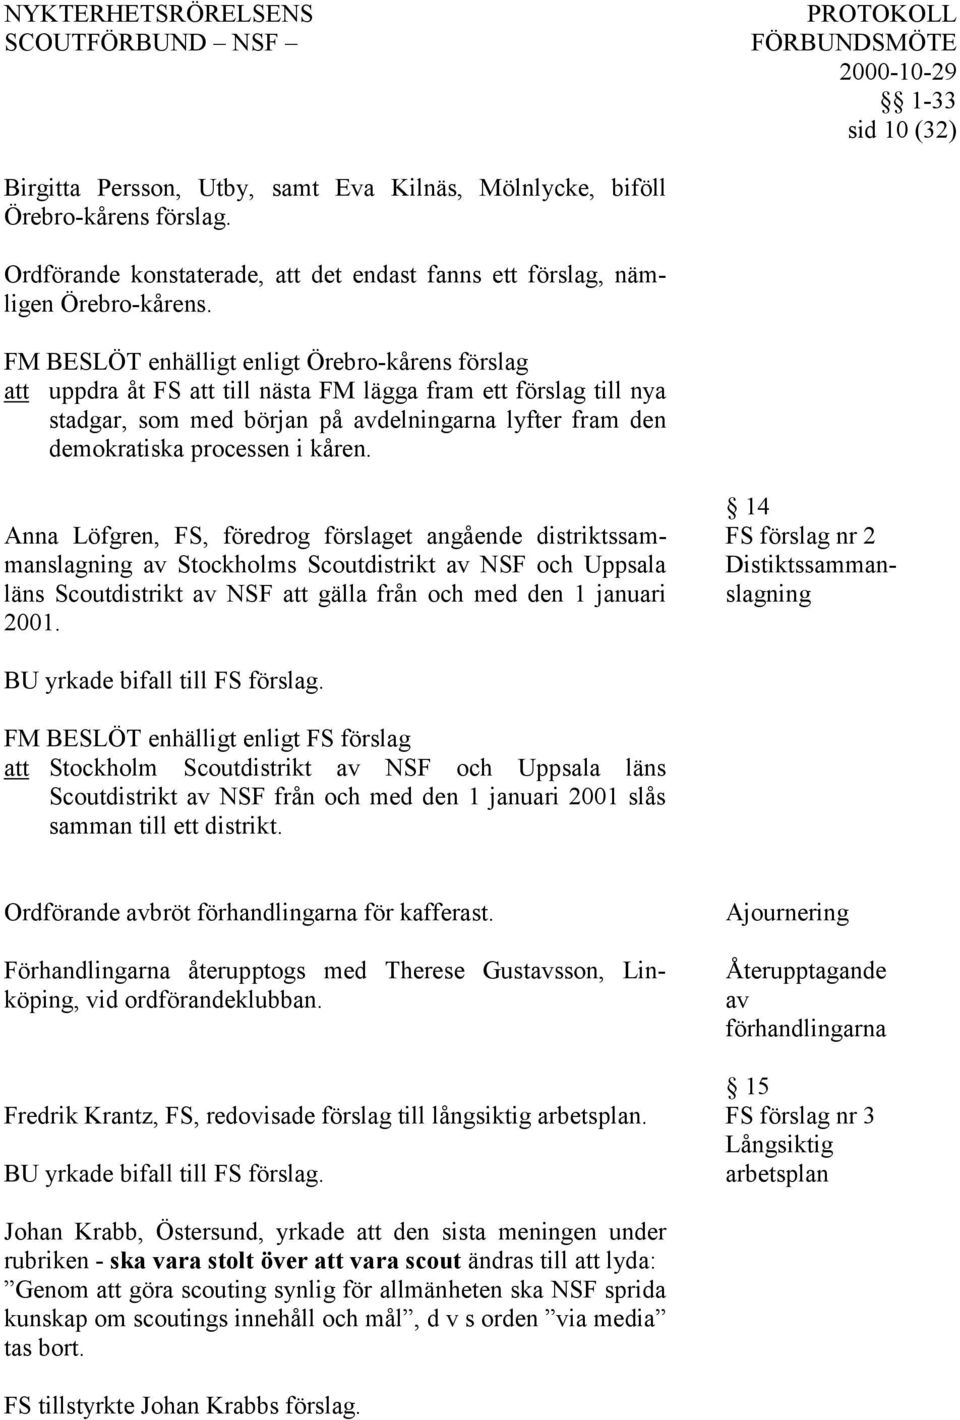 Anna Löfgren, FS, föredrog förslaget angående distriktssammanslagning av Stockholms Scoutdistrikt av NSF och Uppsala läns Scoutdistrikt av NSF att gälla från och med den 1 januari 2001.